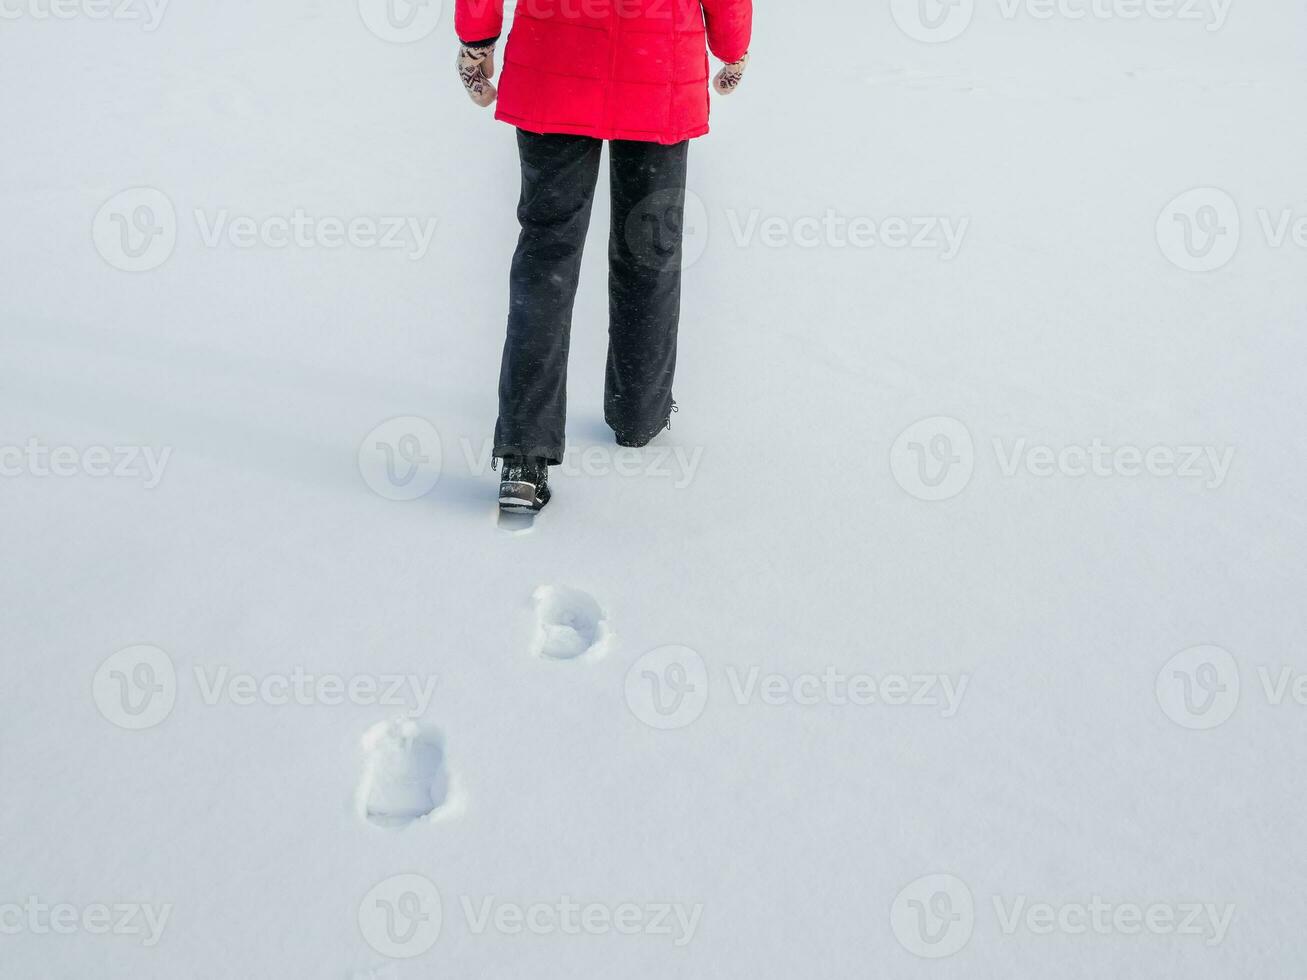 femme dans le rouge veste en marchant sur neige, empreintes dans neige, derrière photo